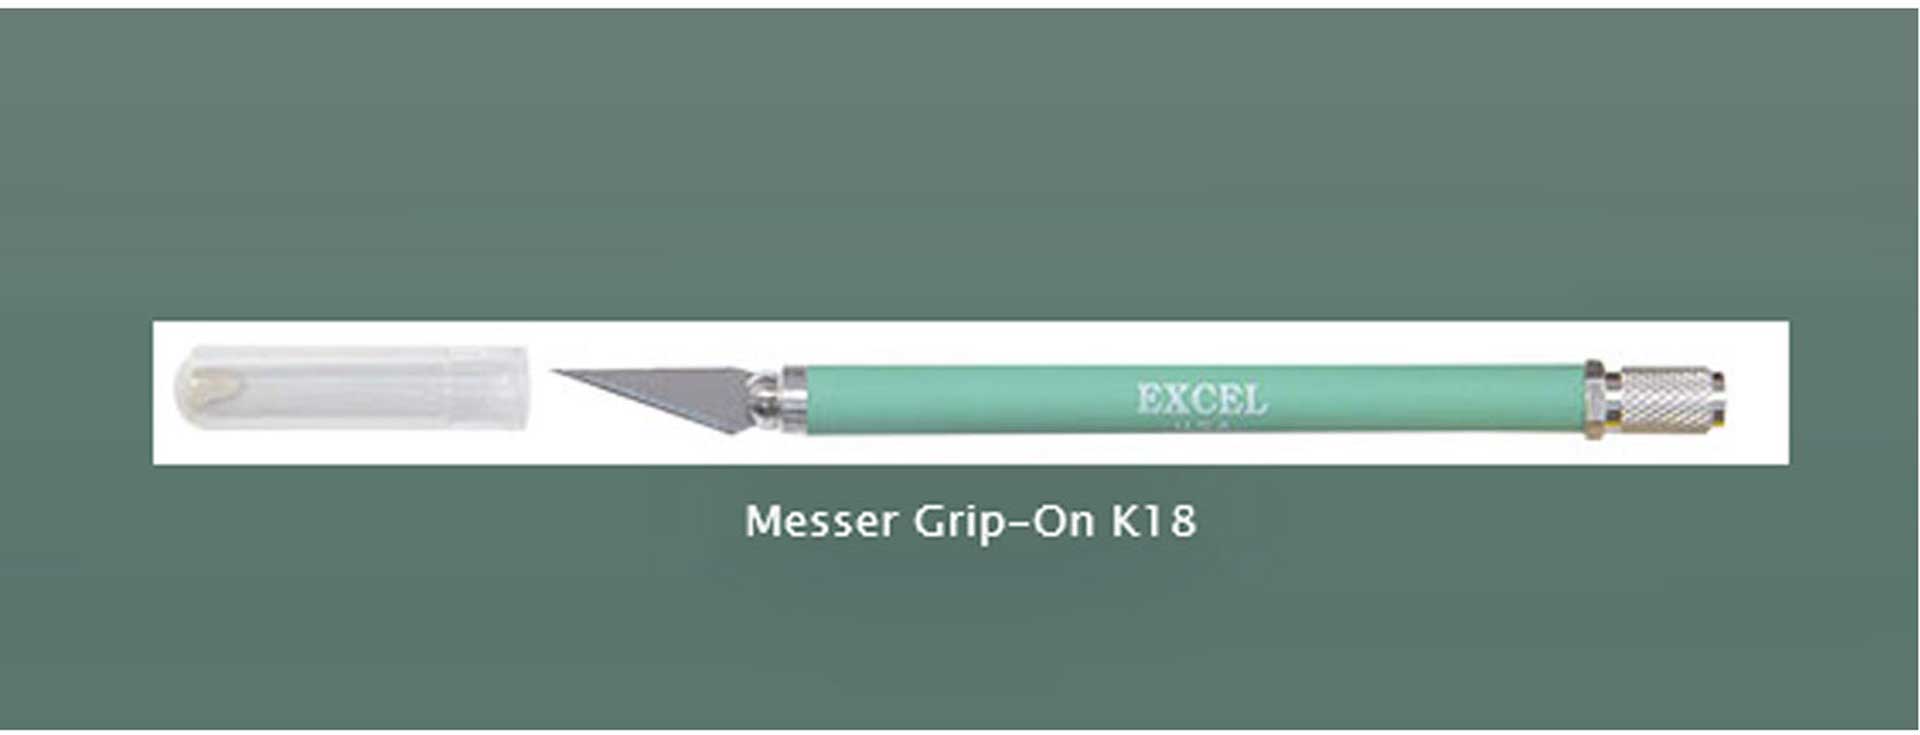 EXCEL GRIP-ON K18 KNIFE PRECISION KNIFE